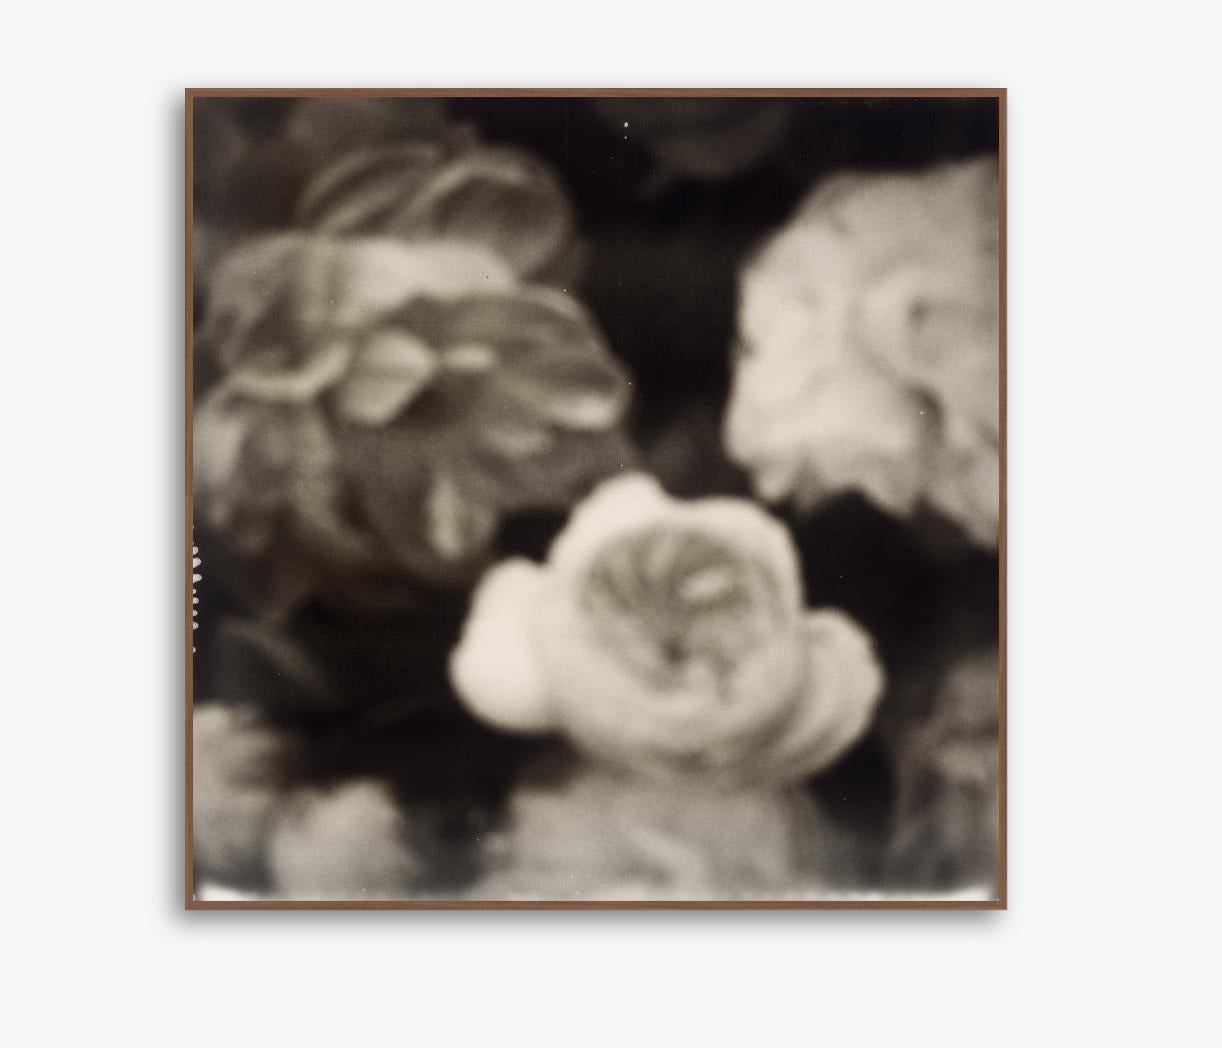 Shadowed Beauty - Tirage photographique contemporain du 21e siècle - Polaroid noir et blanc, Polaroid original, cadre à trous - Tirage photographique sur Dibond Aluminium - Edition de 10 + 1, avec Certificat

Shadowed Beauty est une belle  exemple